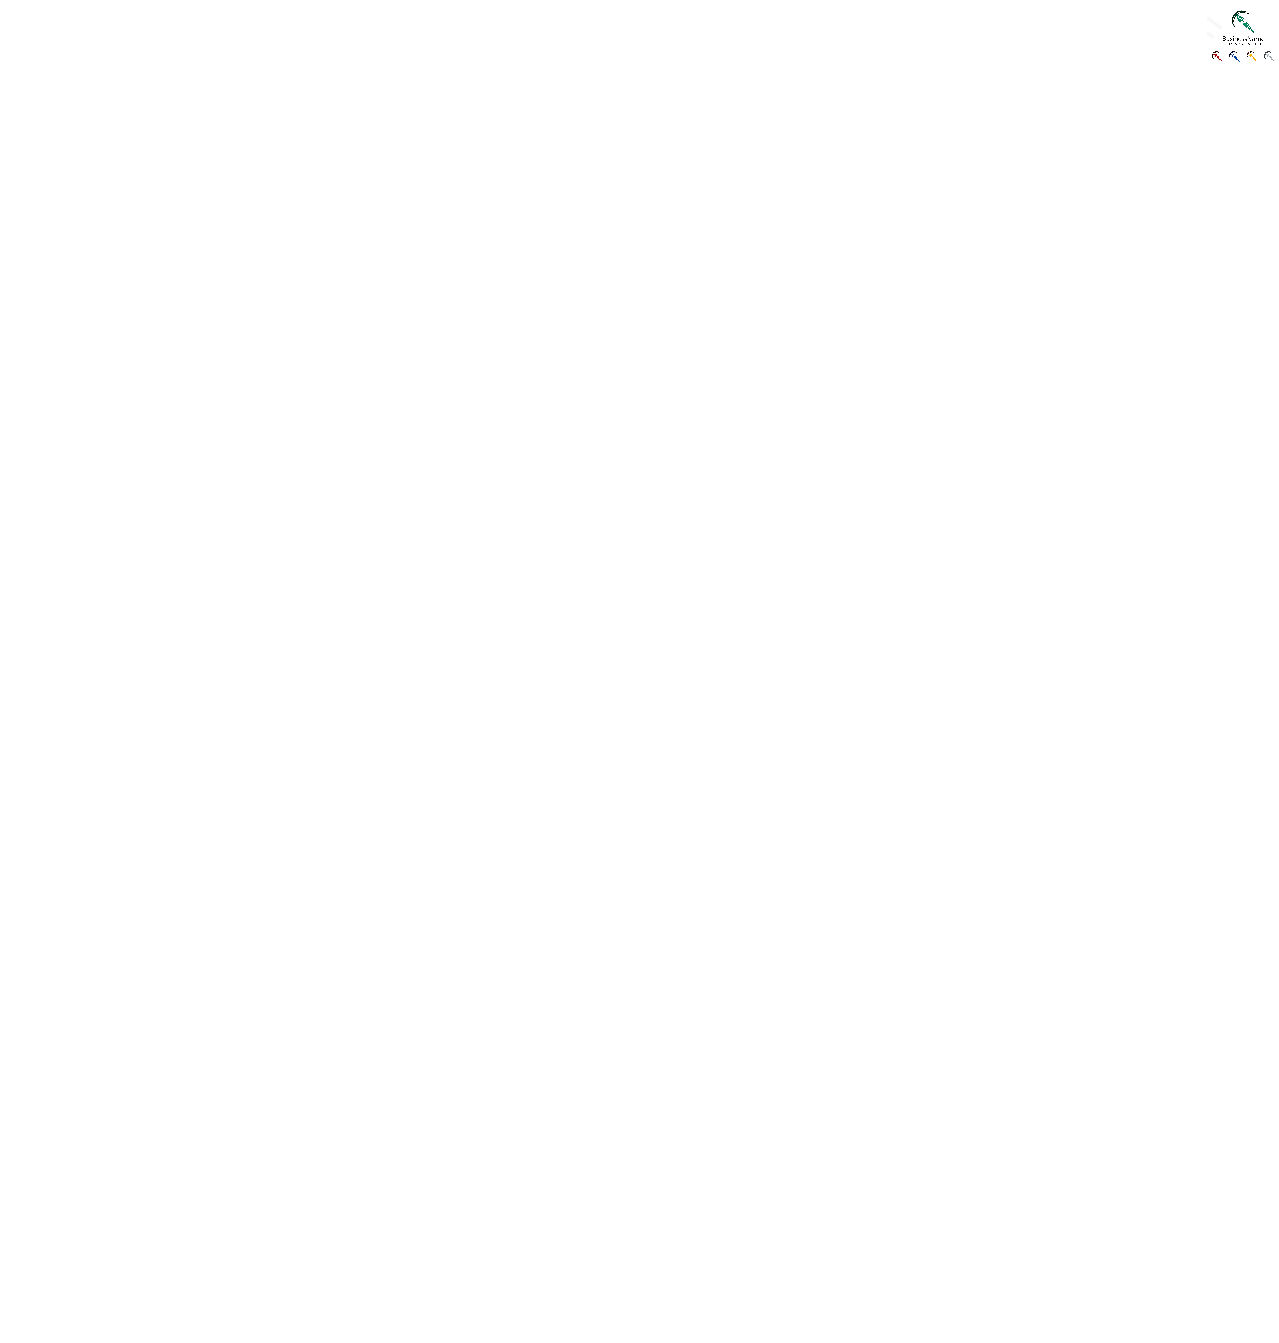 火箭企业商标矢量logo图形